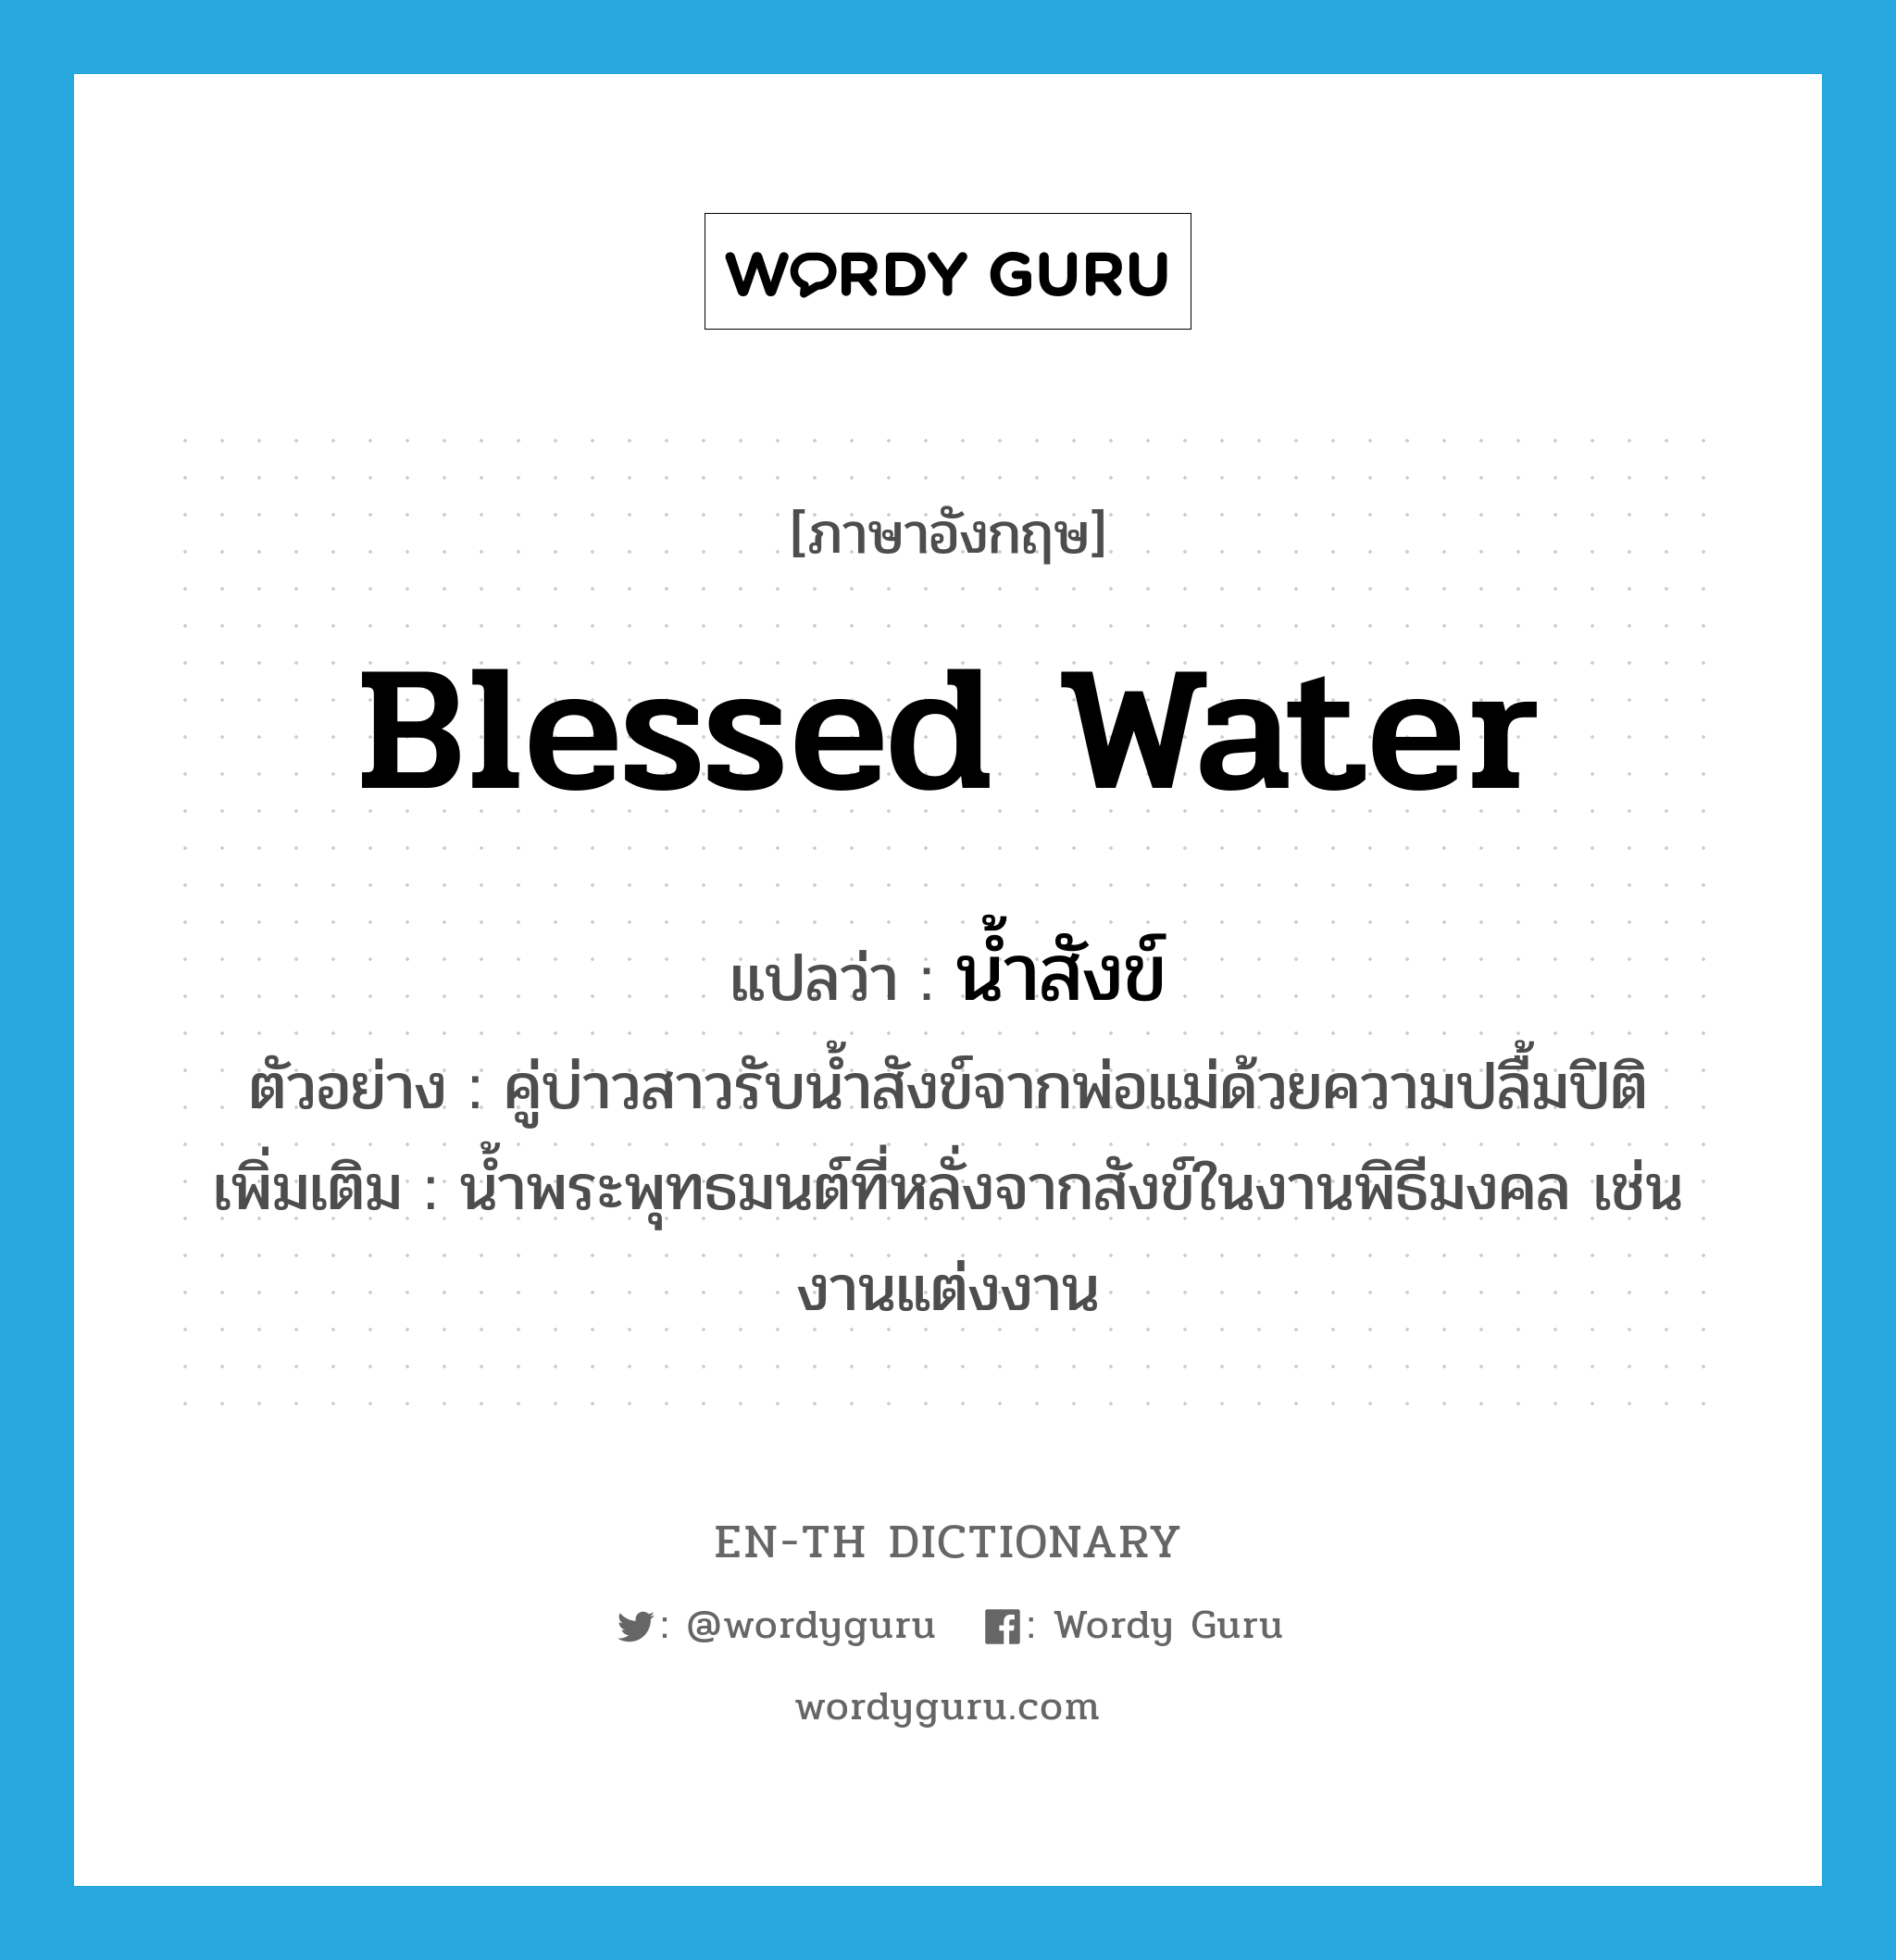 blessed water แปลว่า?, คำศัพท์ภาษาอังกฤษ blessed water แปลว่า น้ำสังข์ ประเภท N ตัวอย่าง คู่บ่าวสาวรับน้ำสังข์จากพ่อแม่ด้วยความปลื้มปิติ เพิ่มเติม น้ำพระพุทธมนต์ที่หลั่งจากสังข์ในงานพิธีมงคล เช่น งานแต่งงาน หมวด N